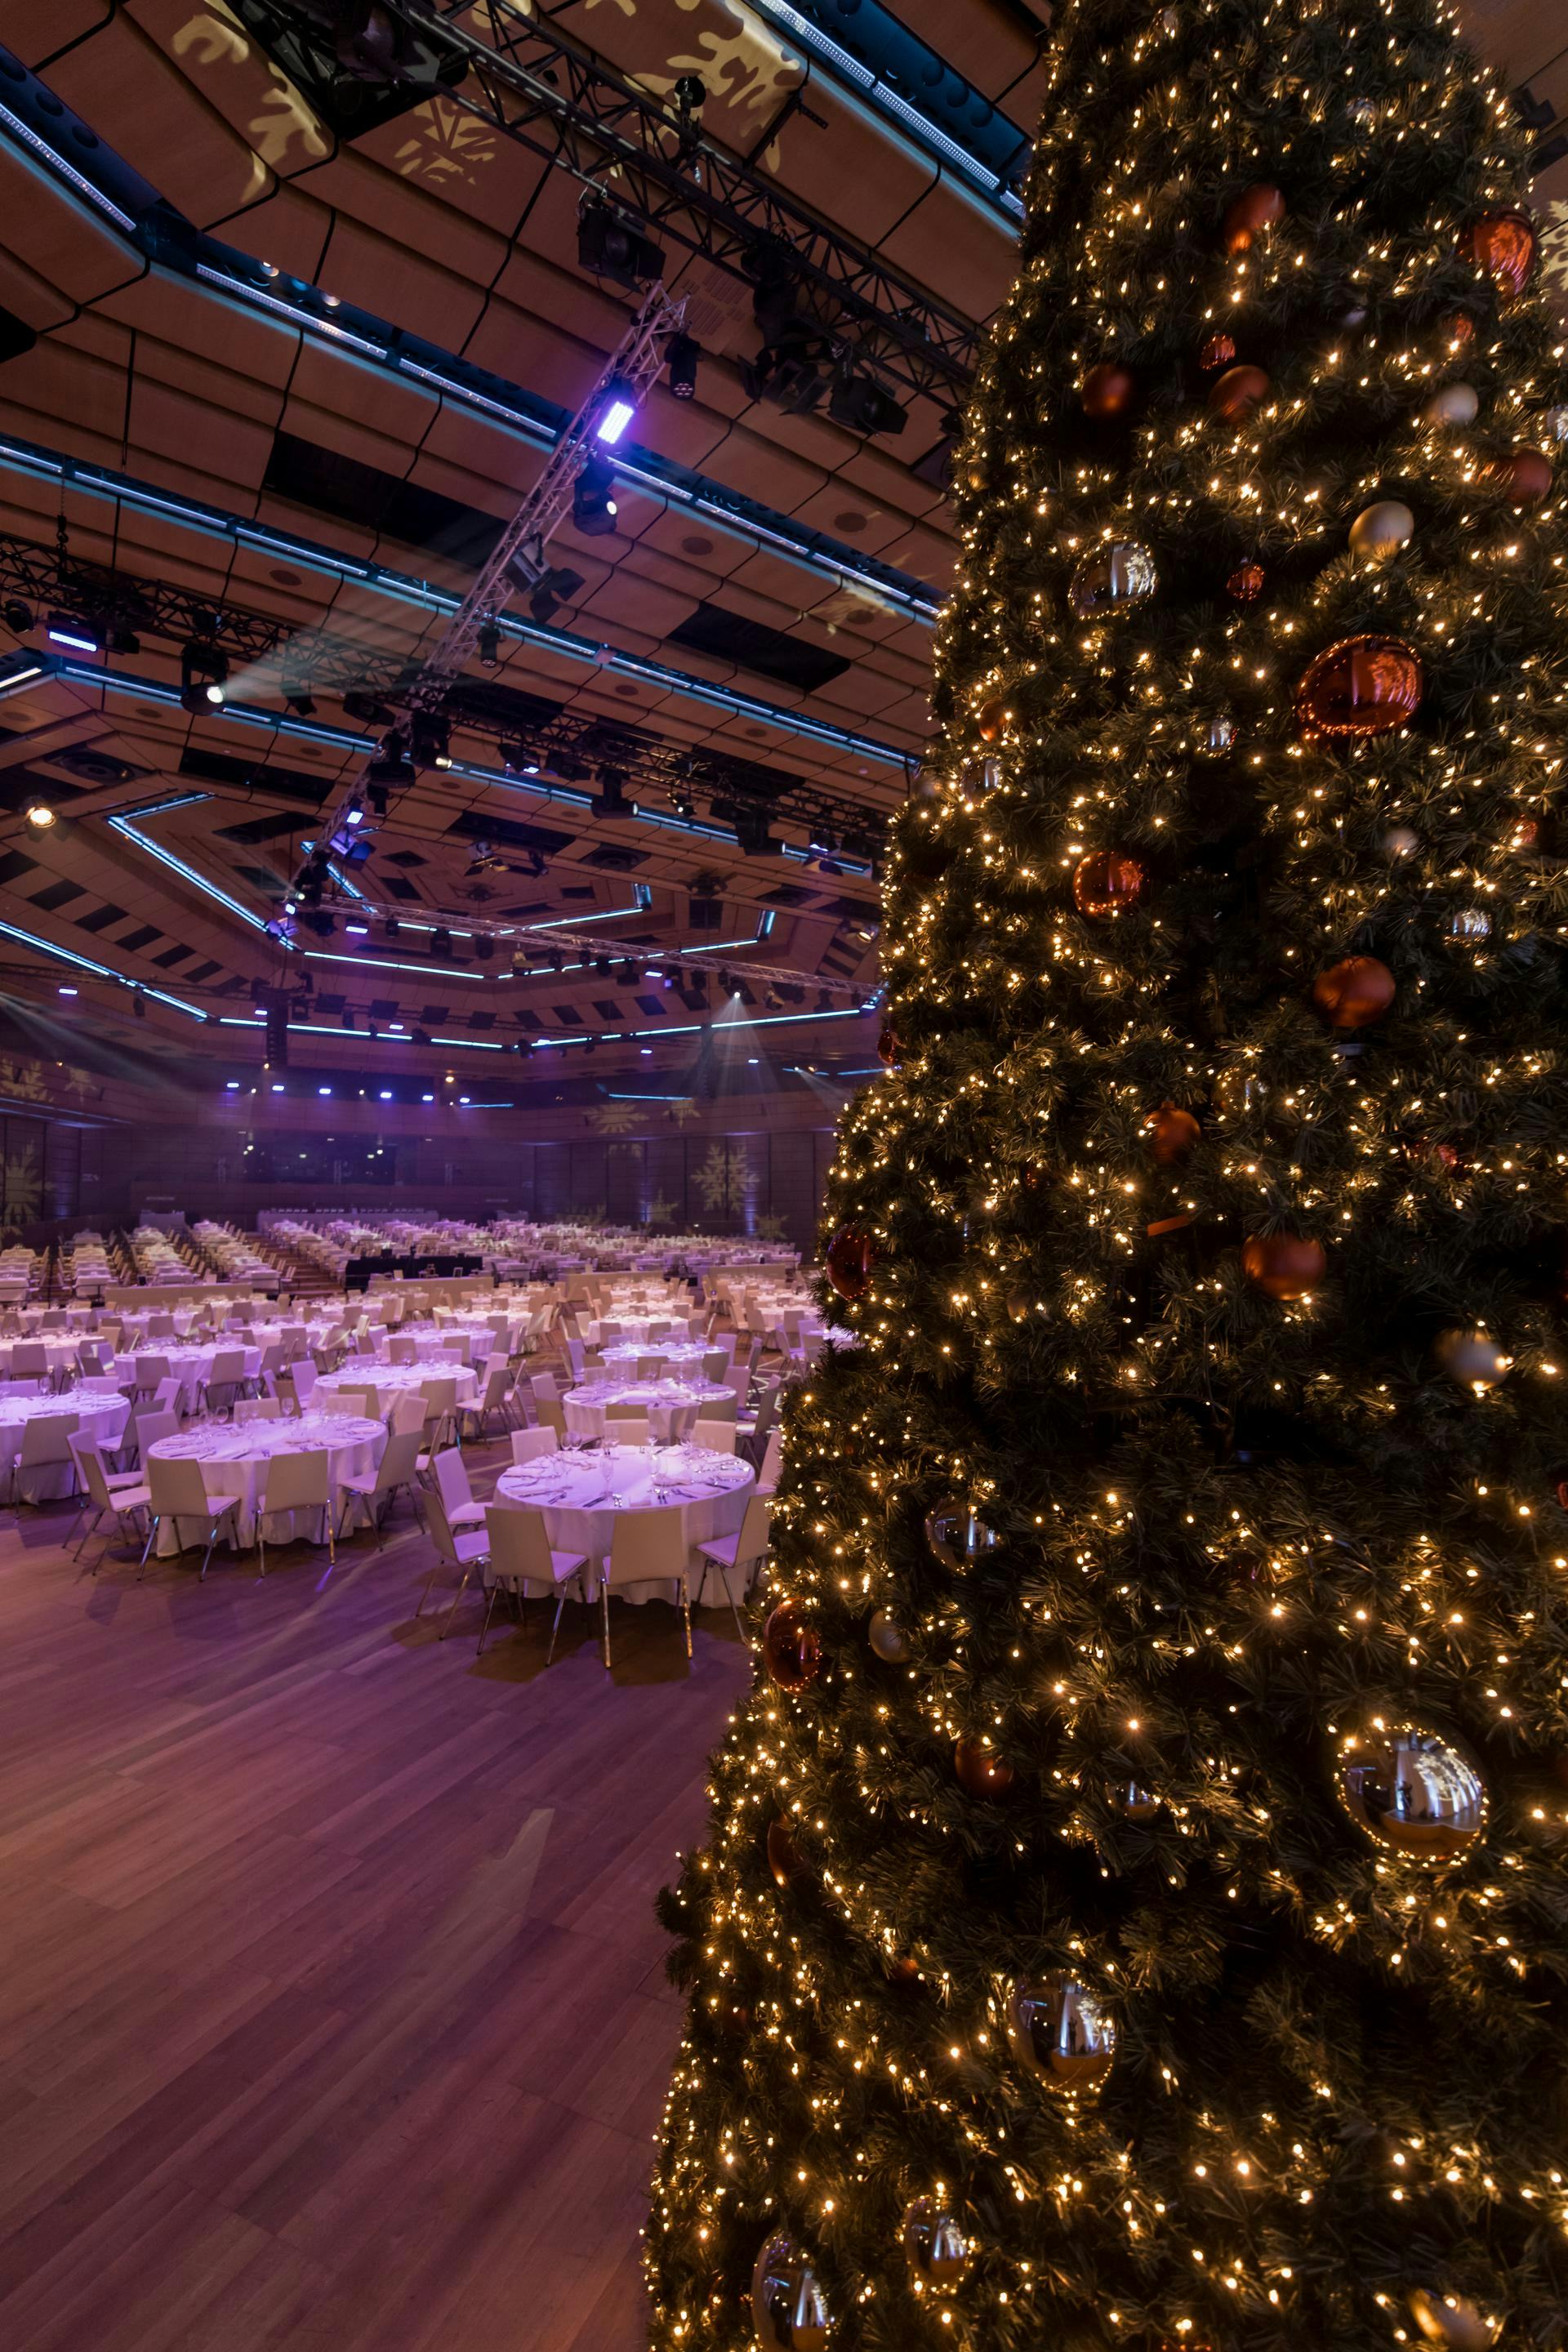 Foto: beleuchteter Weihnachtsbaum in einer Halle mit Galatischen